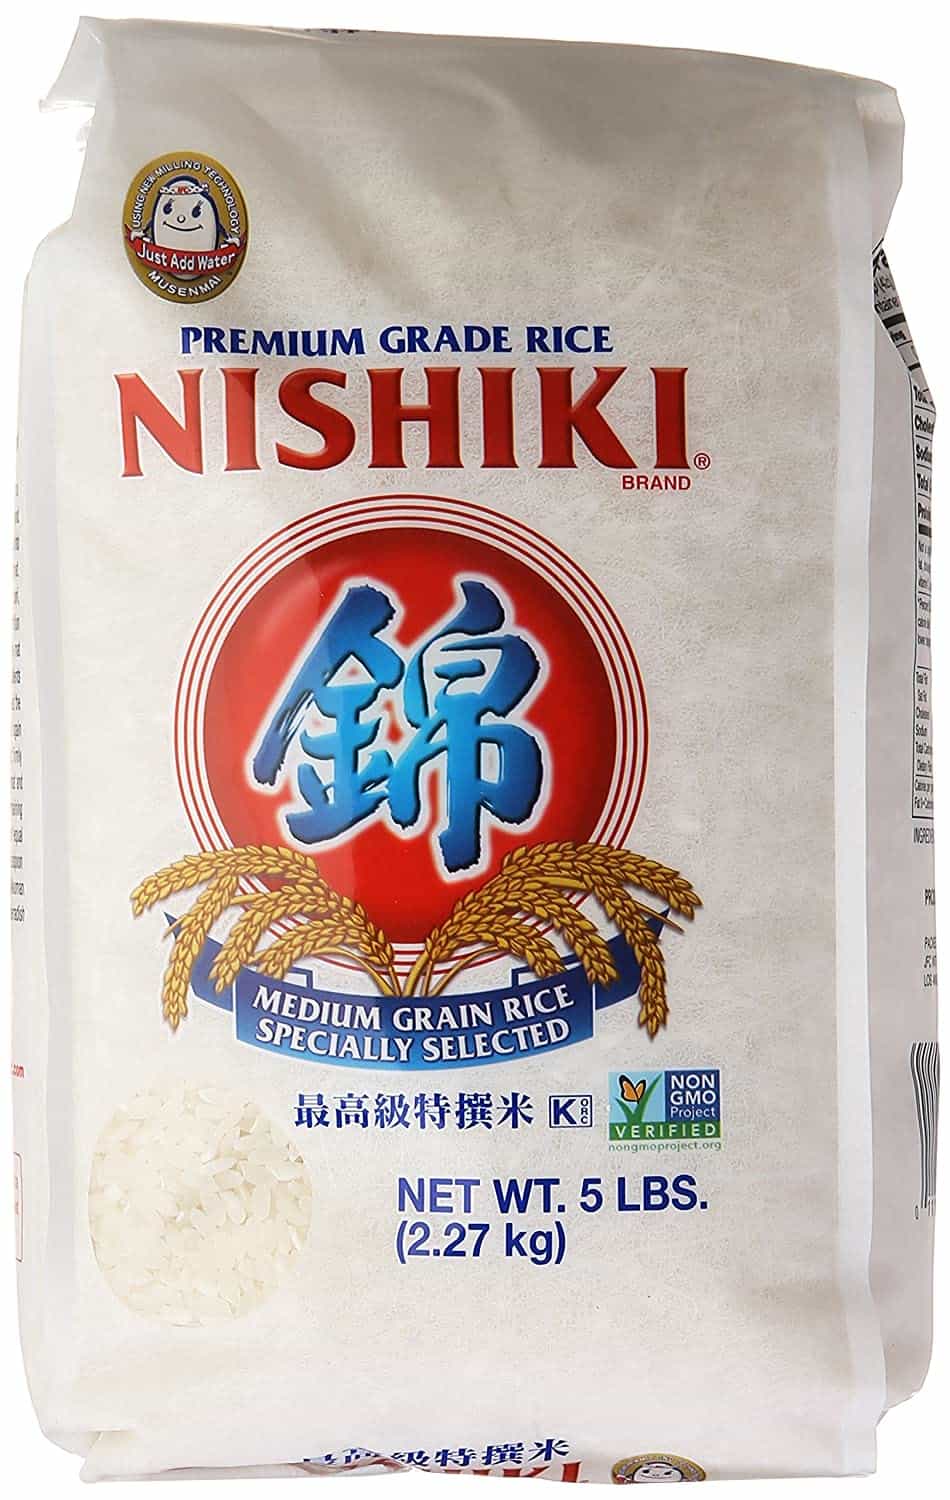 Arroz de sushi Nishiki como substituto do arroz glutinoso